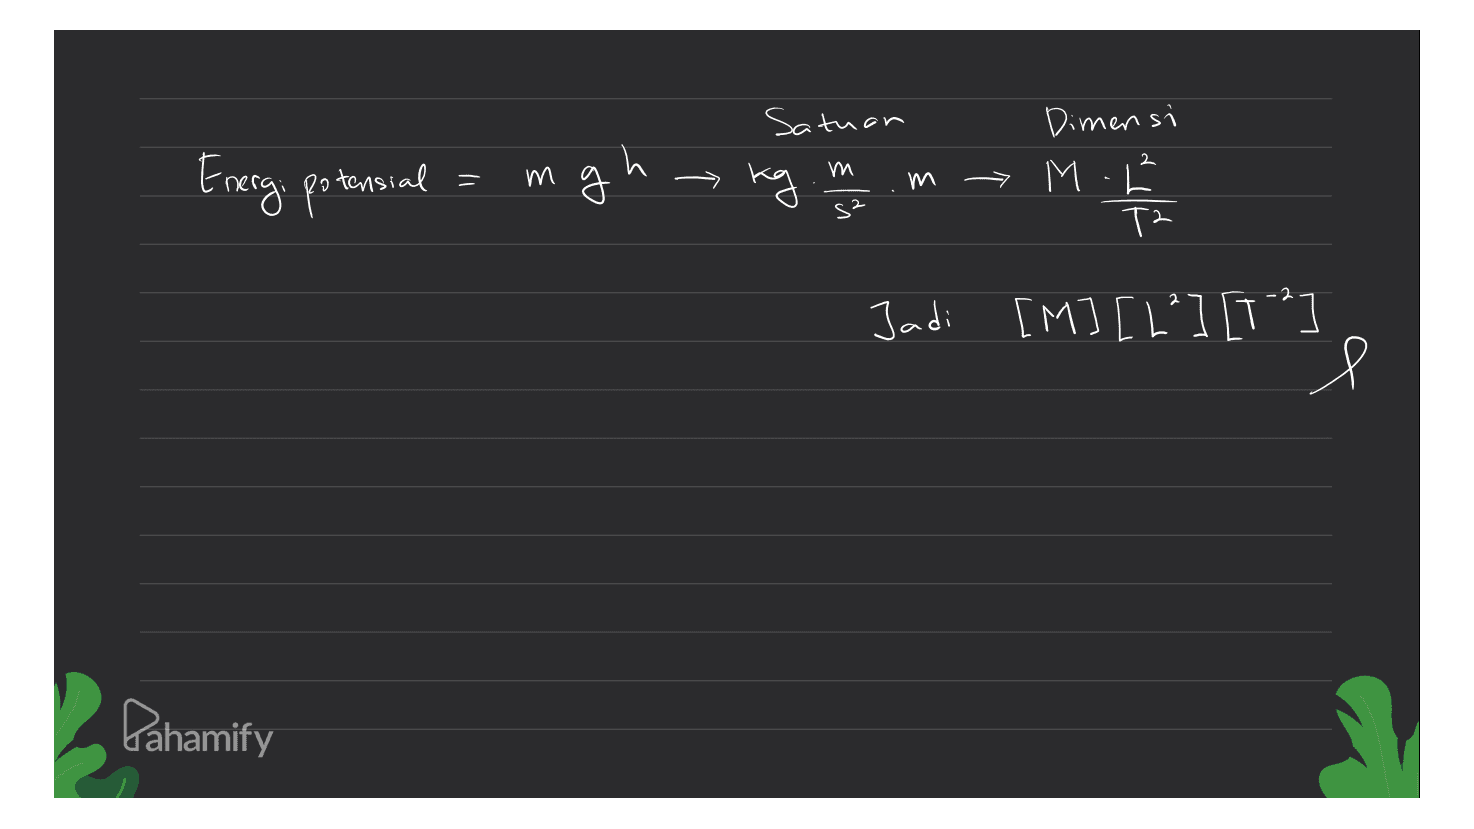 Satuan 2 m и Energi potensial mg m Dimensi > M T2 s? Jadi [M] [2²] [T? l Pahamify 